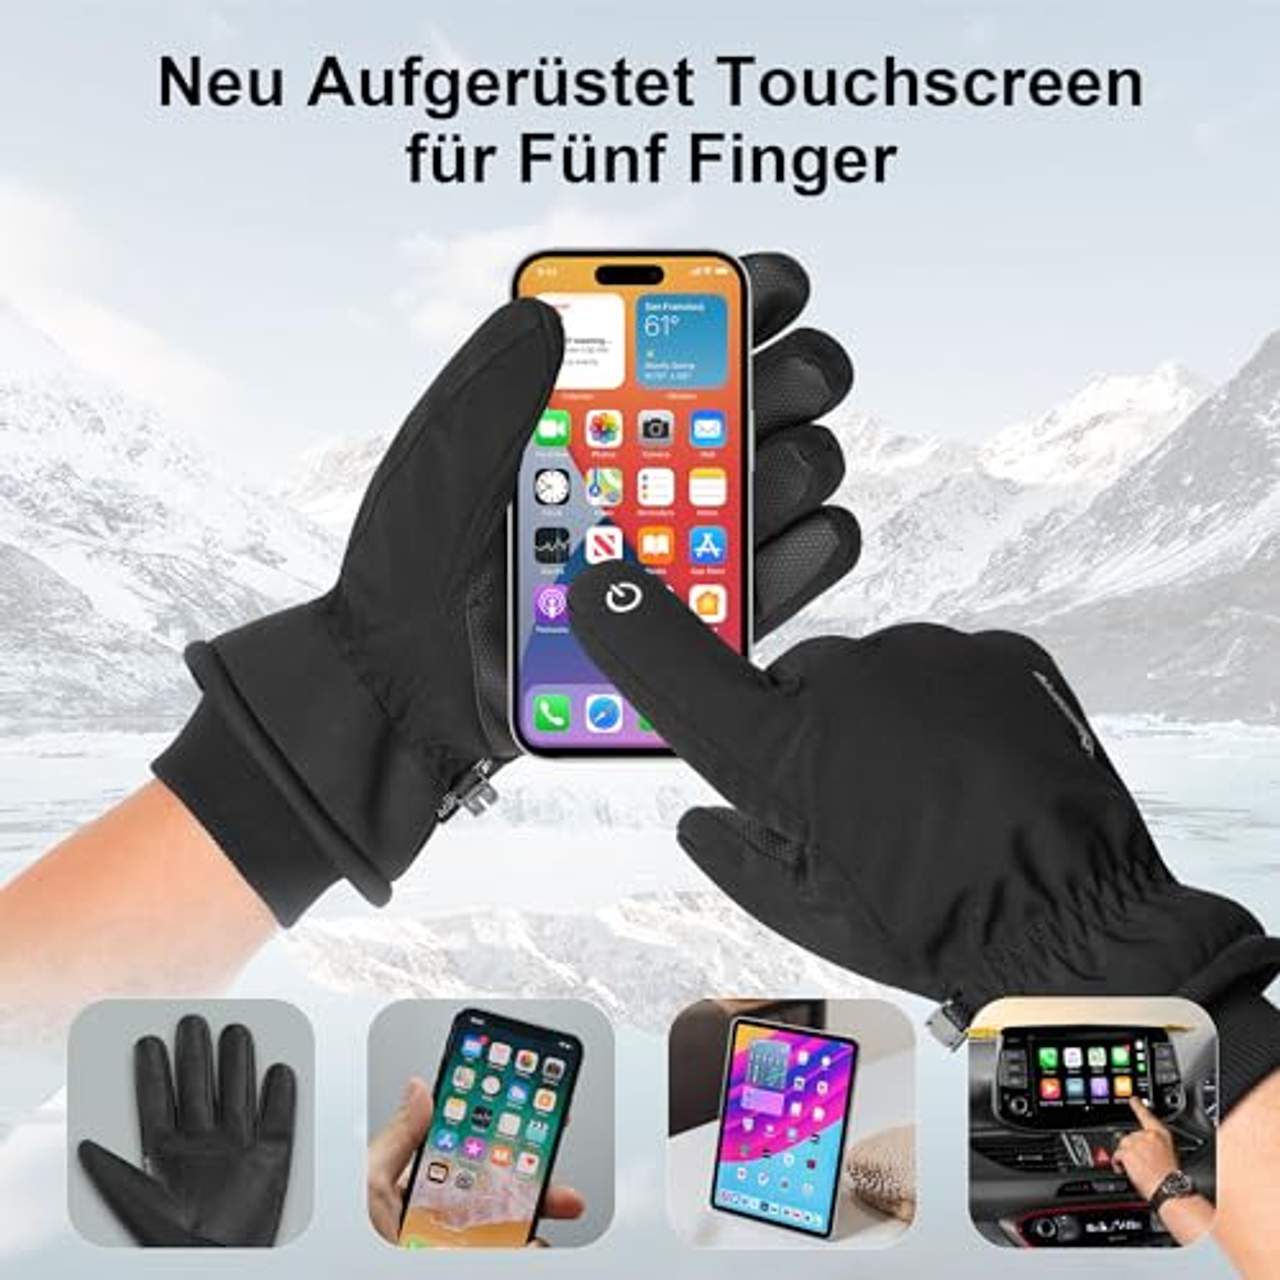 Anqier Warm Winterhandschuhe wasserdichte Touchscreen Handschuhe